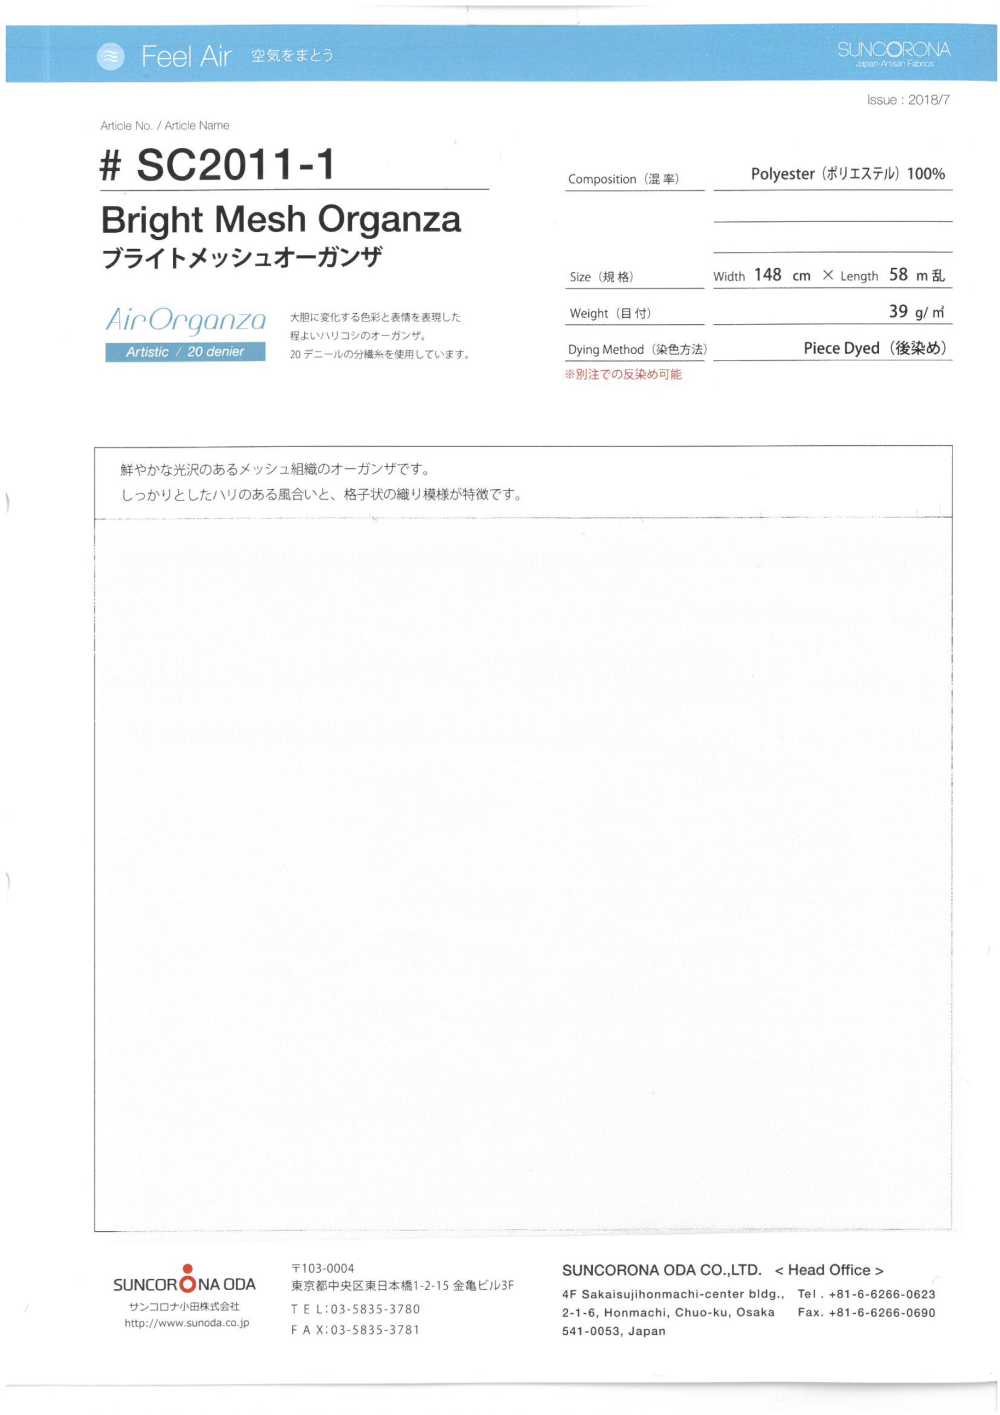 SC2011-1 Vải Organdy Vải Lưới Sáng Màu Suncorona Oda